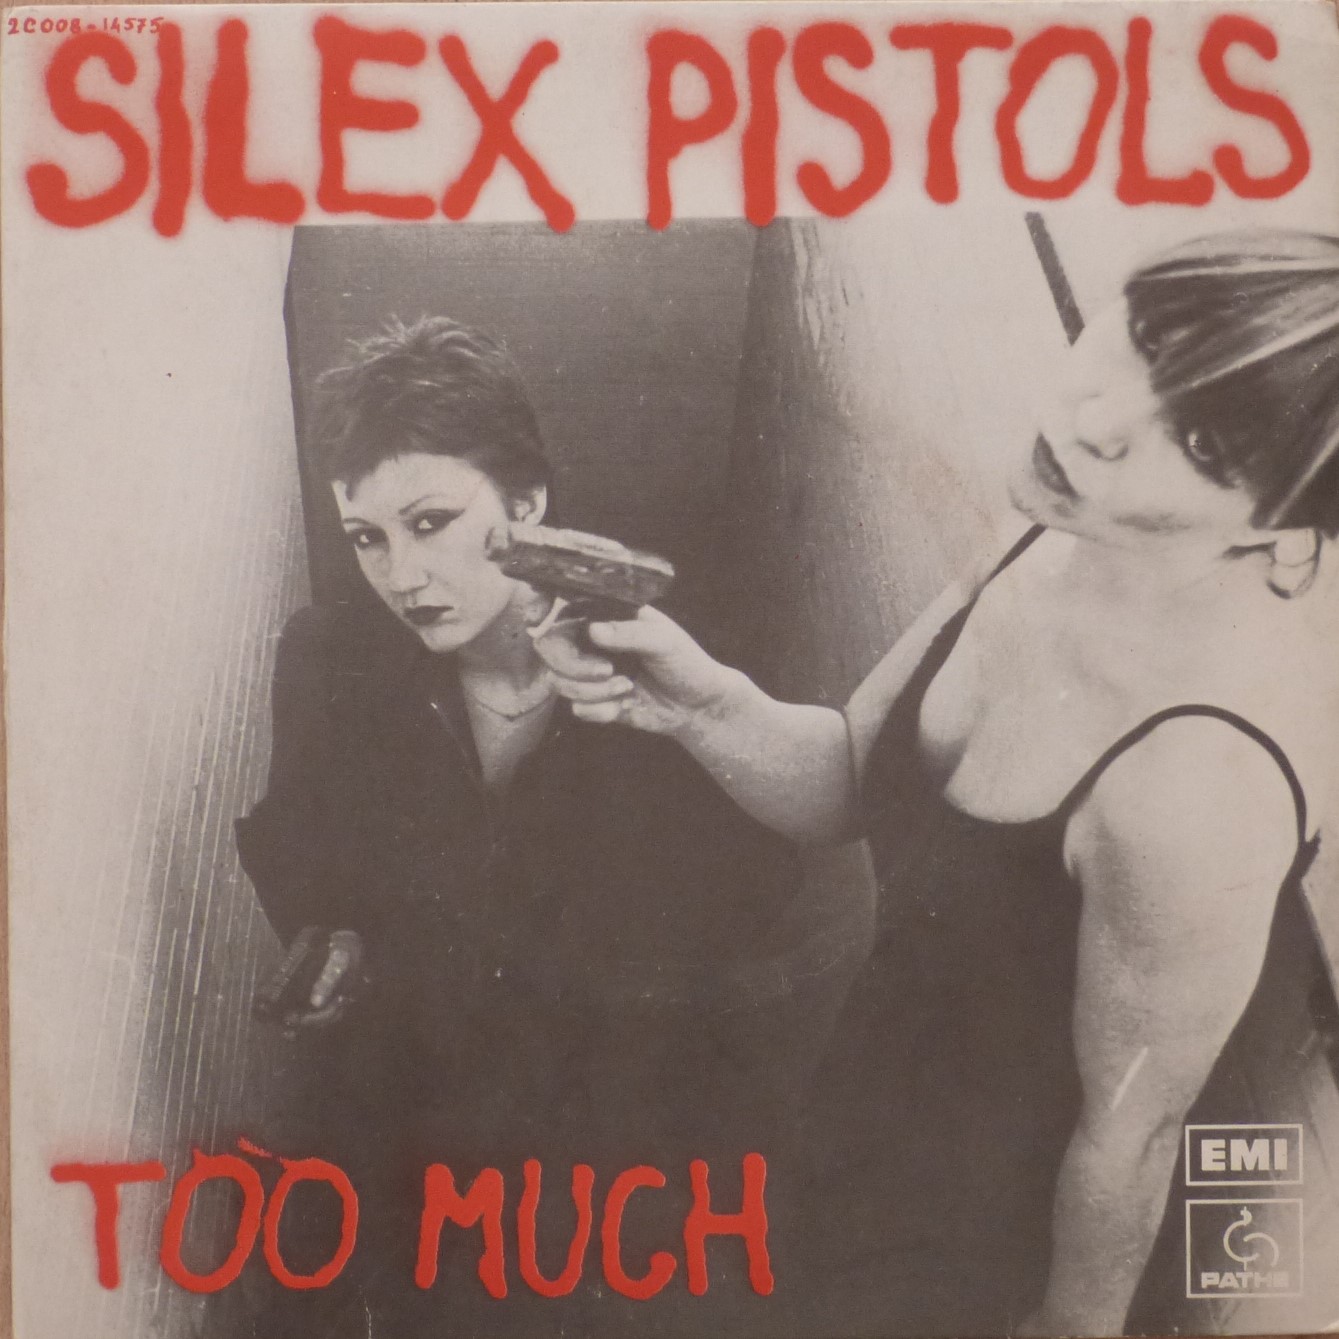 Too Much, Silex Pistols